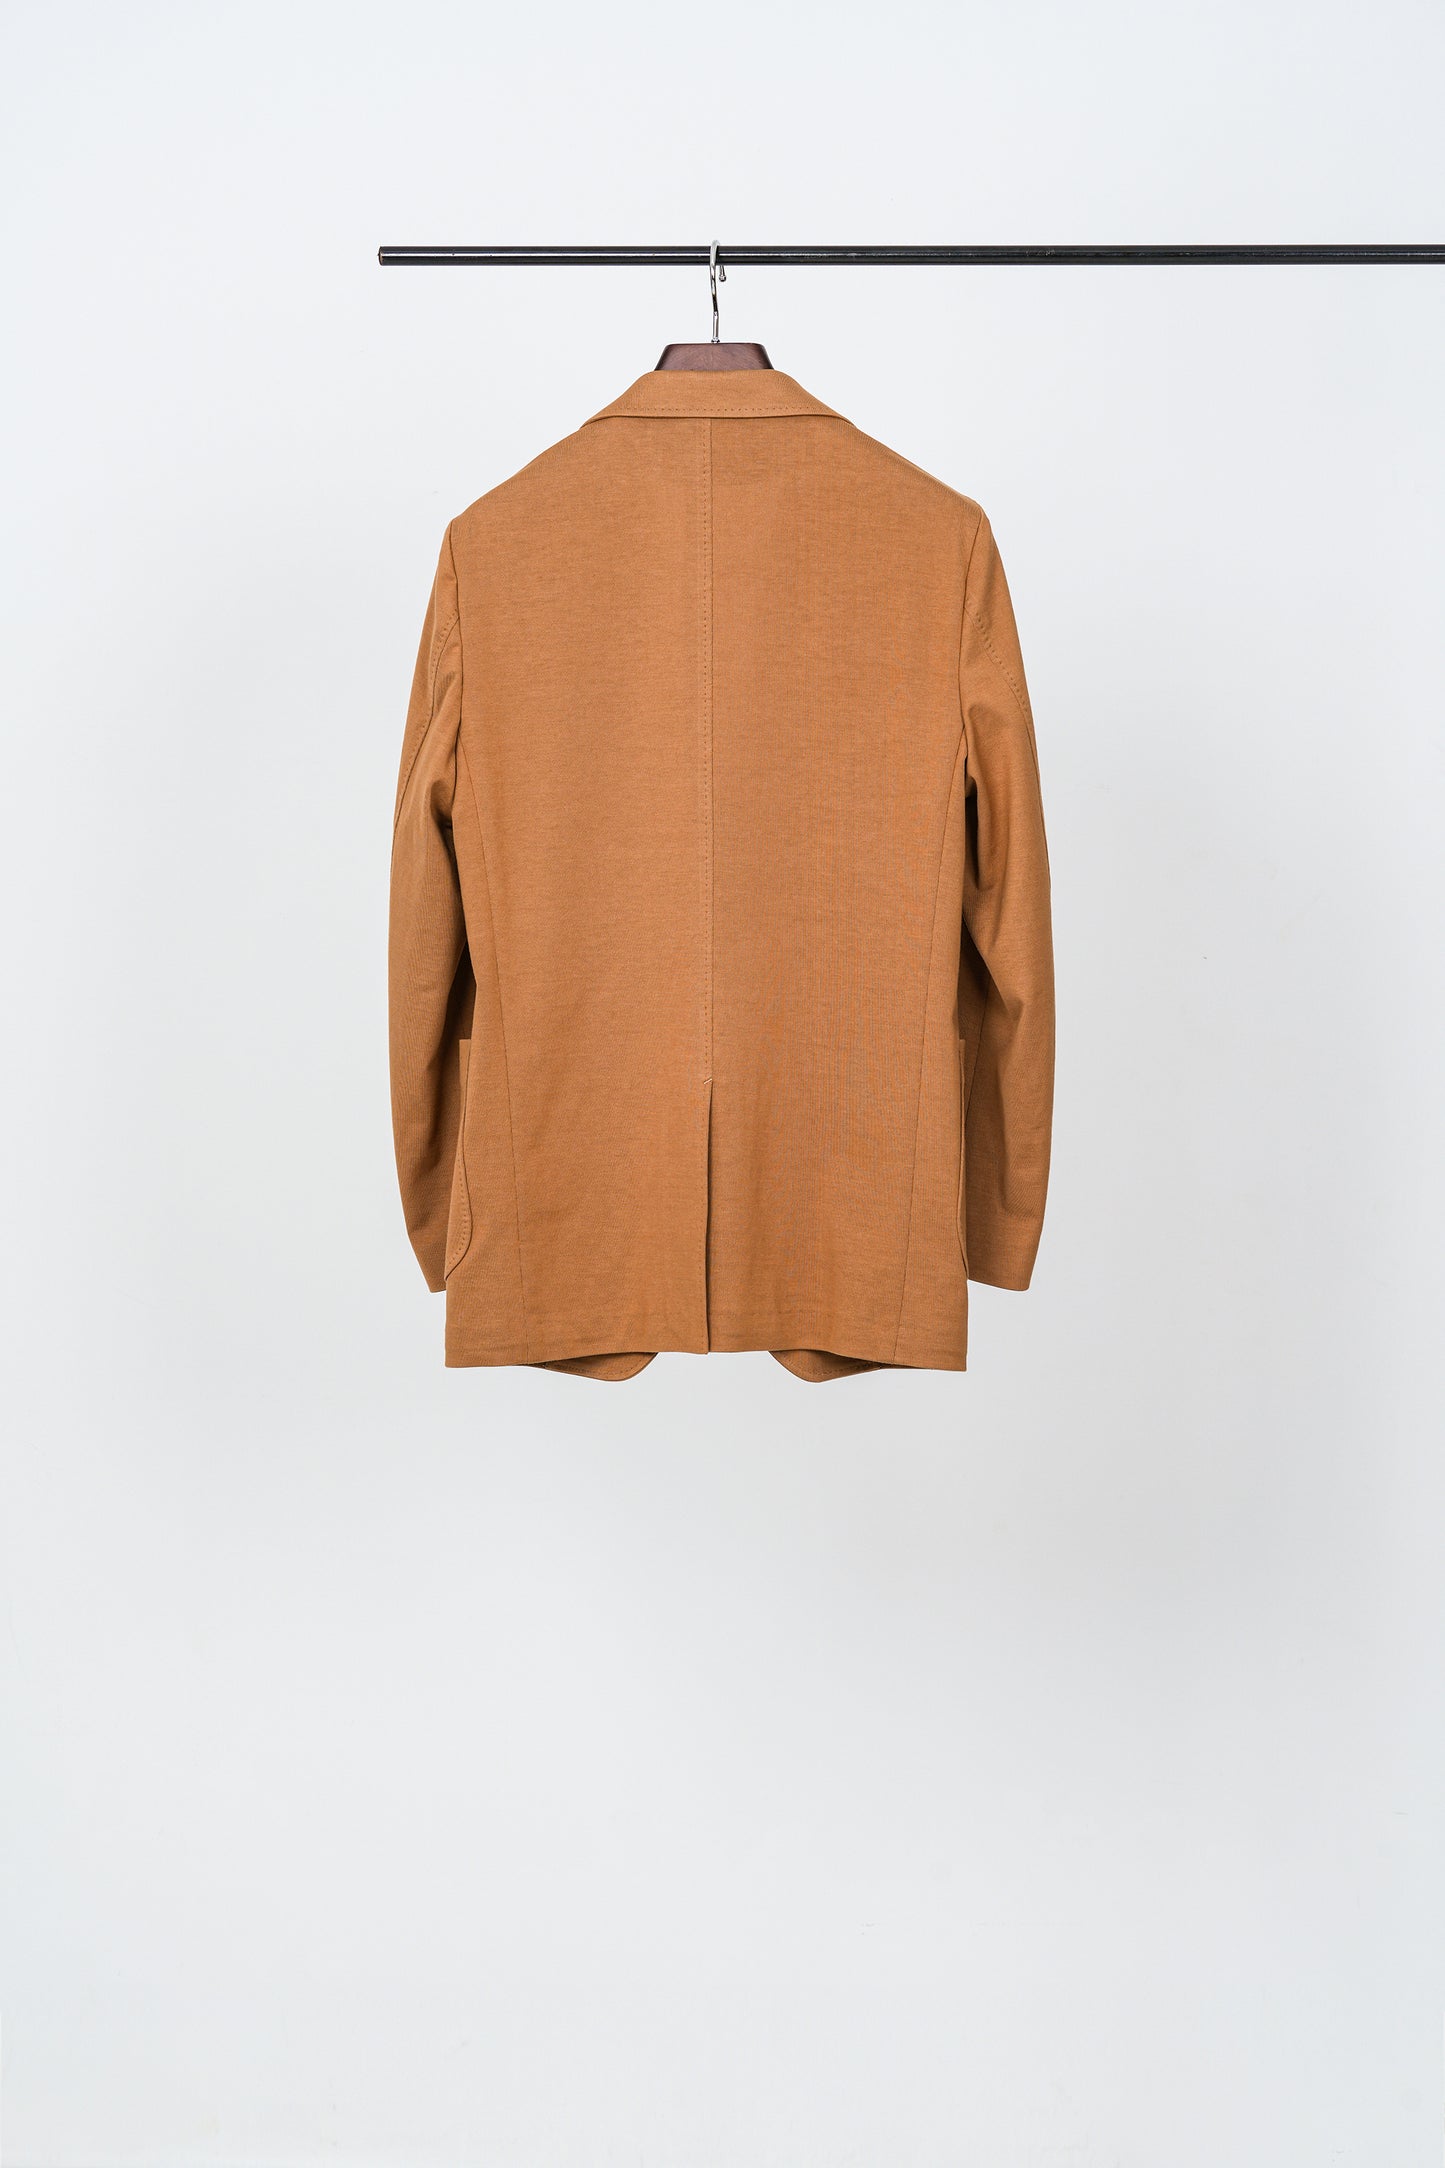 Botanical-Dyed Supima Cotton Jacket